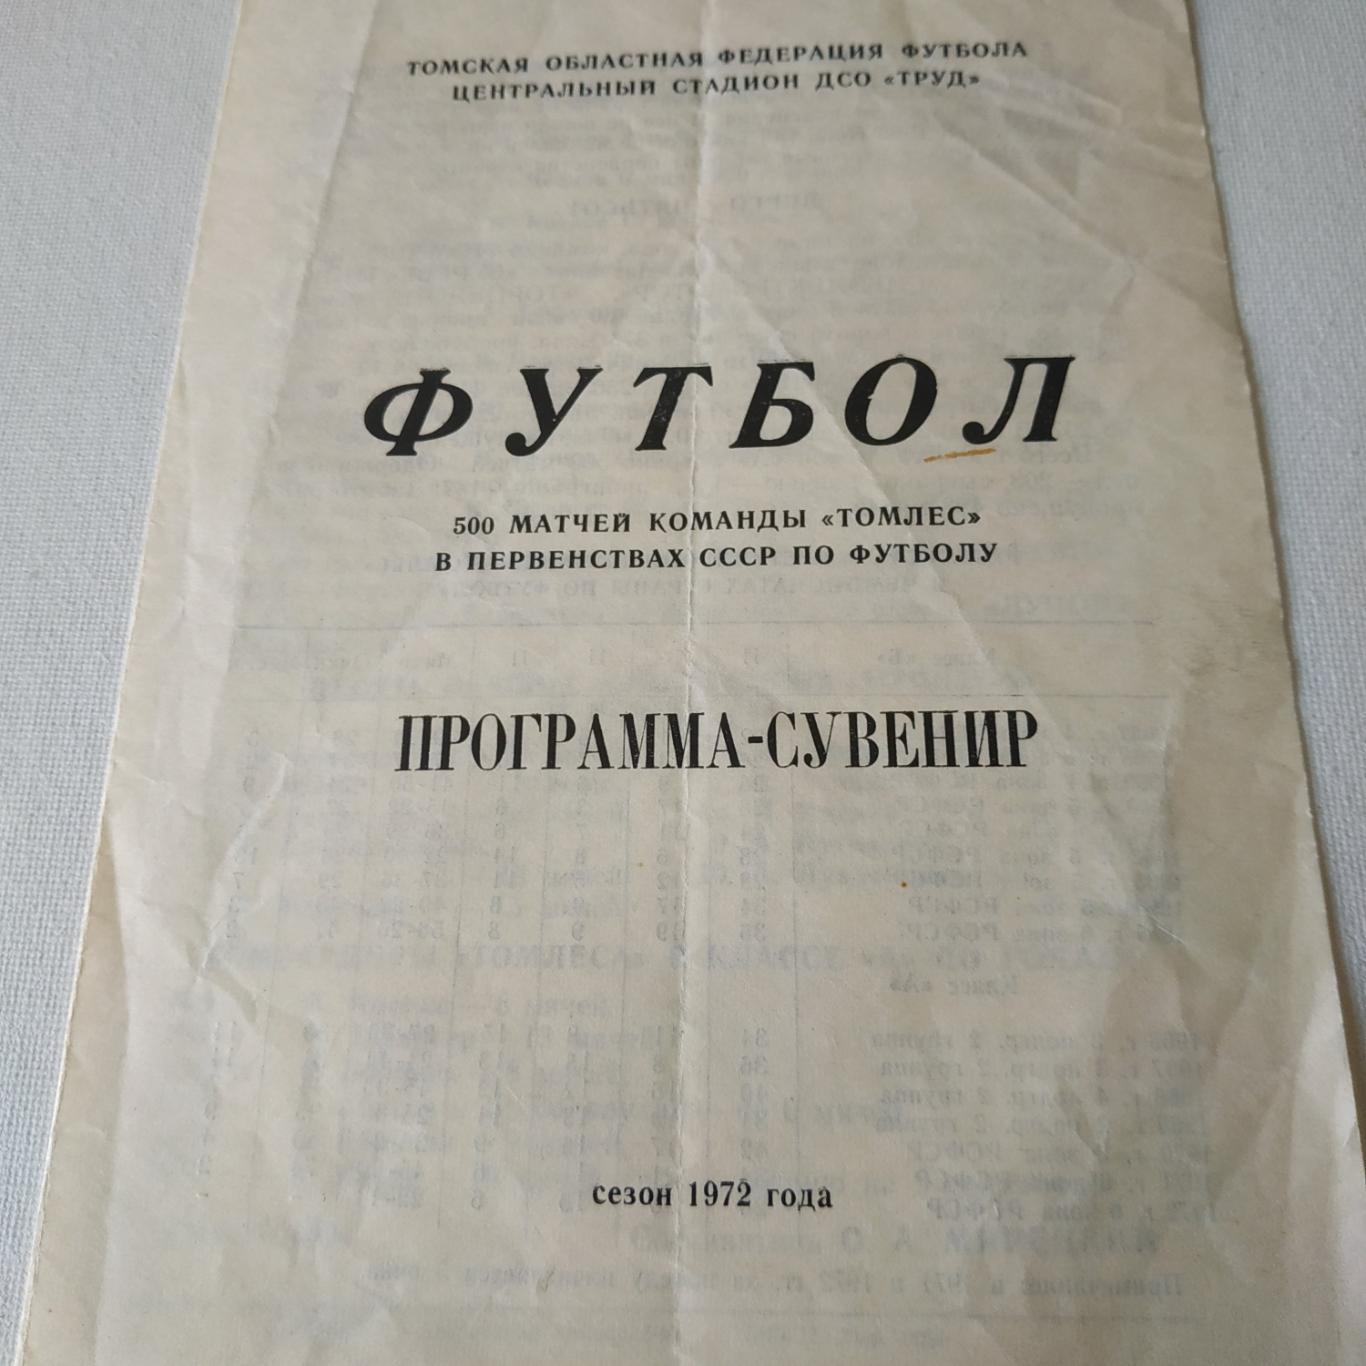 Томлес (Томск) -1972 программа - сувенир